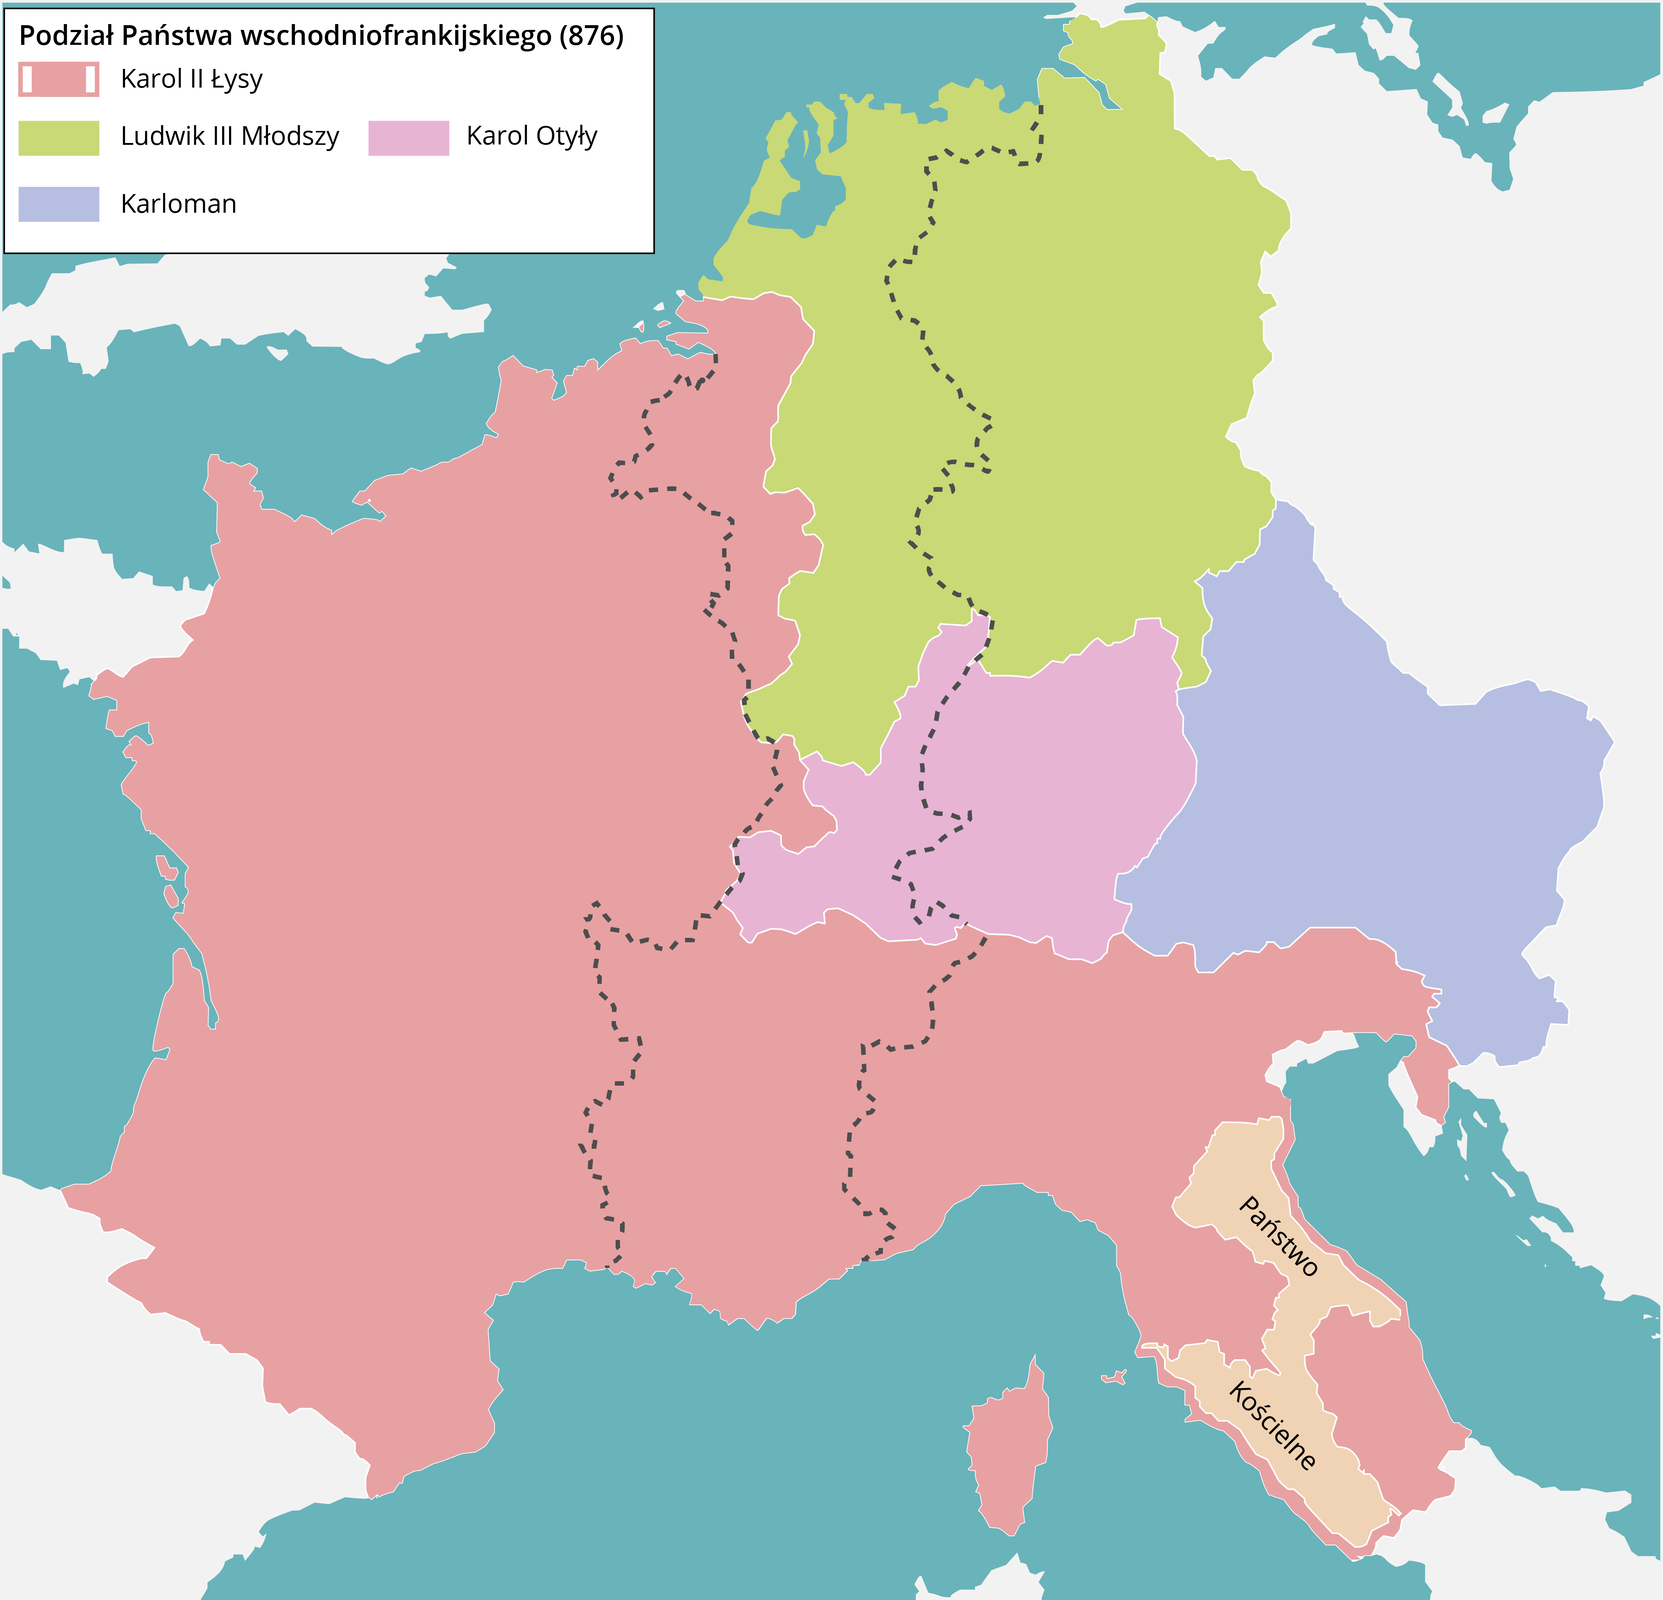 Mapa zachodniej Europy przedstawia podział Państwa wschodniofrankijskiego w 876 roku. Ludwik III Młodszy władał terenami dzisiejszych północnych i środkowych Niemiec. Karol Otyły miał w posiadaniu tereny południowych Niemiec natomiast Karloman na wschód od terenów Karola Otyłego. Karol II Łysy rządził na terenach dzisiejszej Francji, Korsyki oraz południowej Europy aż do środkowych Włoch pomijają Państwo Kościelne.